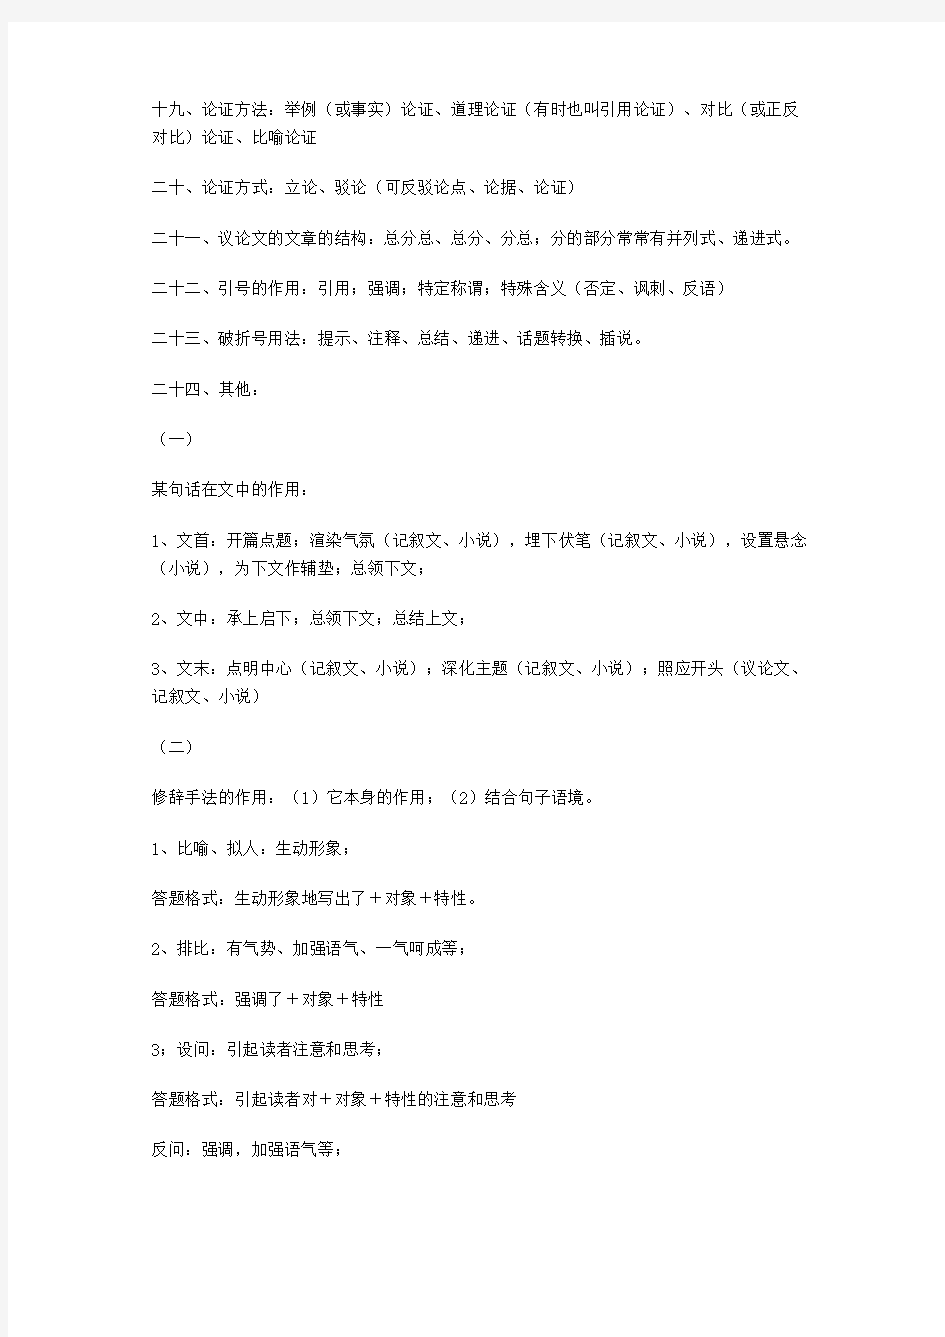 部编初三初中语文阅读理解整理及答题技巧汇总